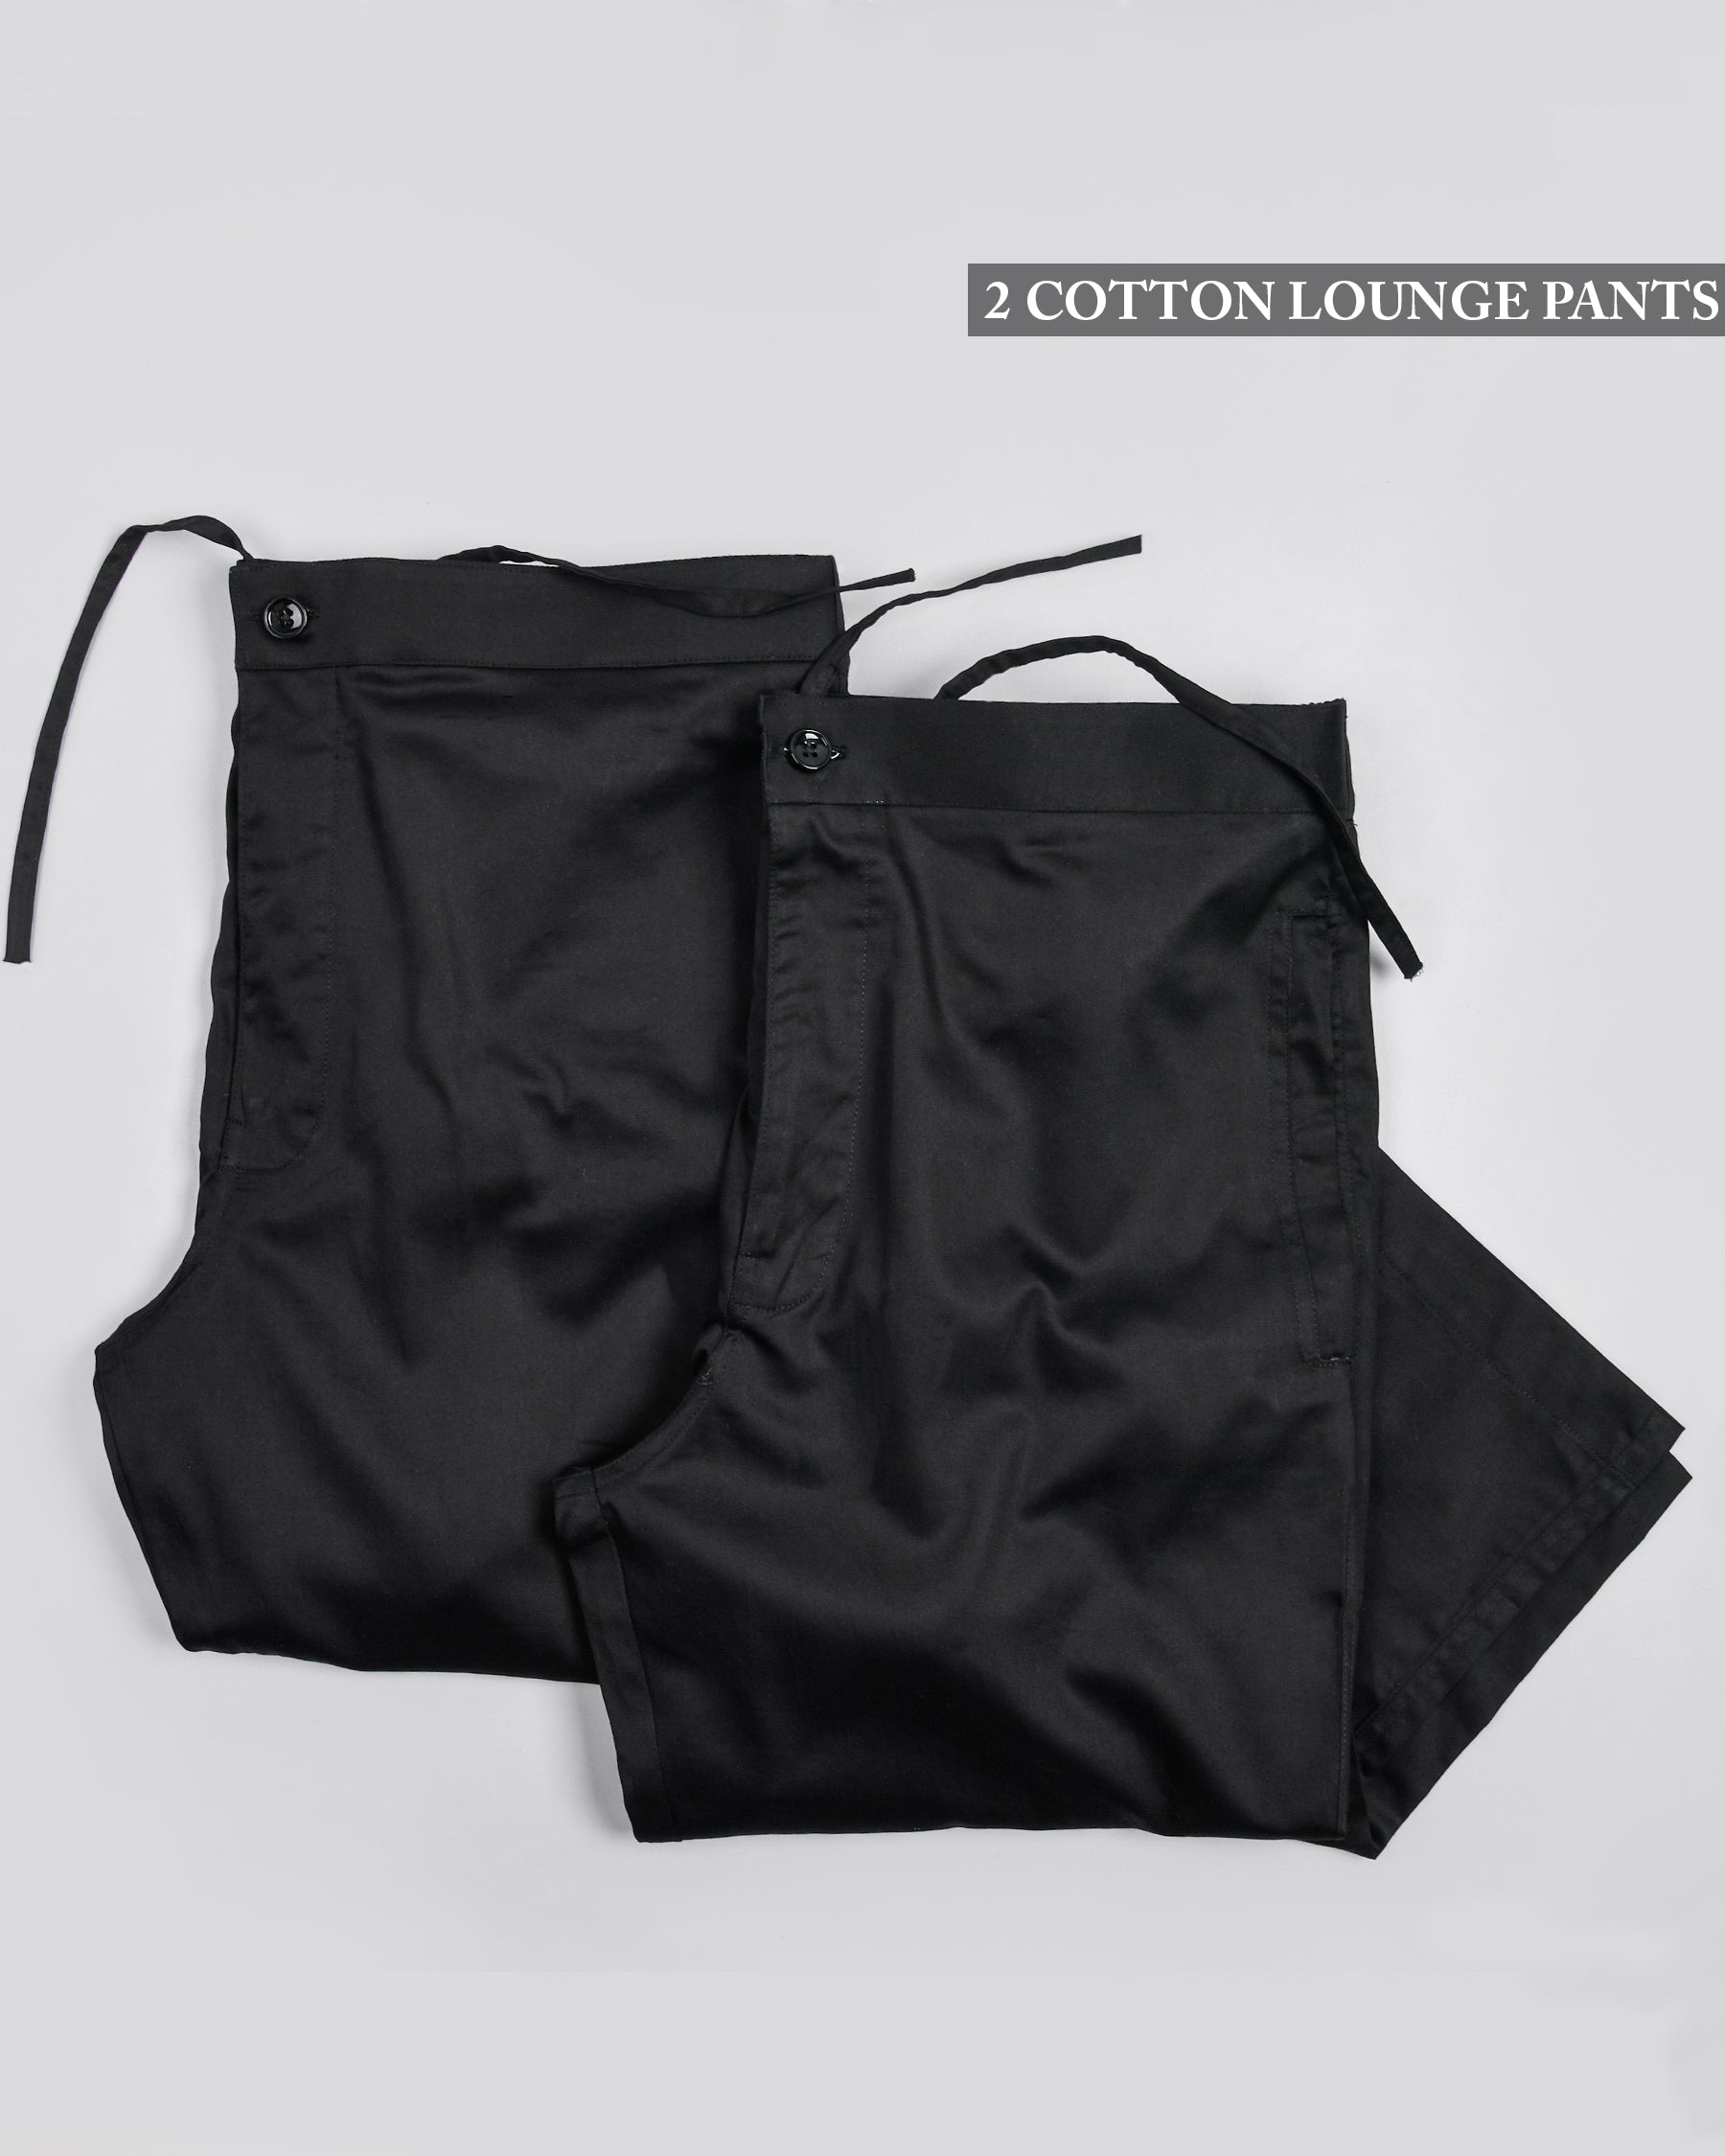 Two Black Premium Cotton Lounge Pants LP082-32, LP082-40, LP082-44, LP082-36, LP082-34, LP082-30, LP082-38, LP082-28, LP082-42